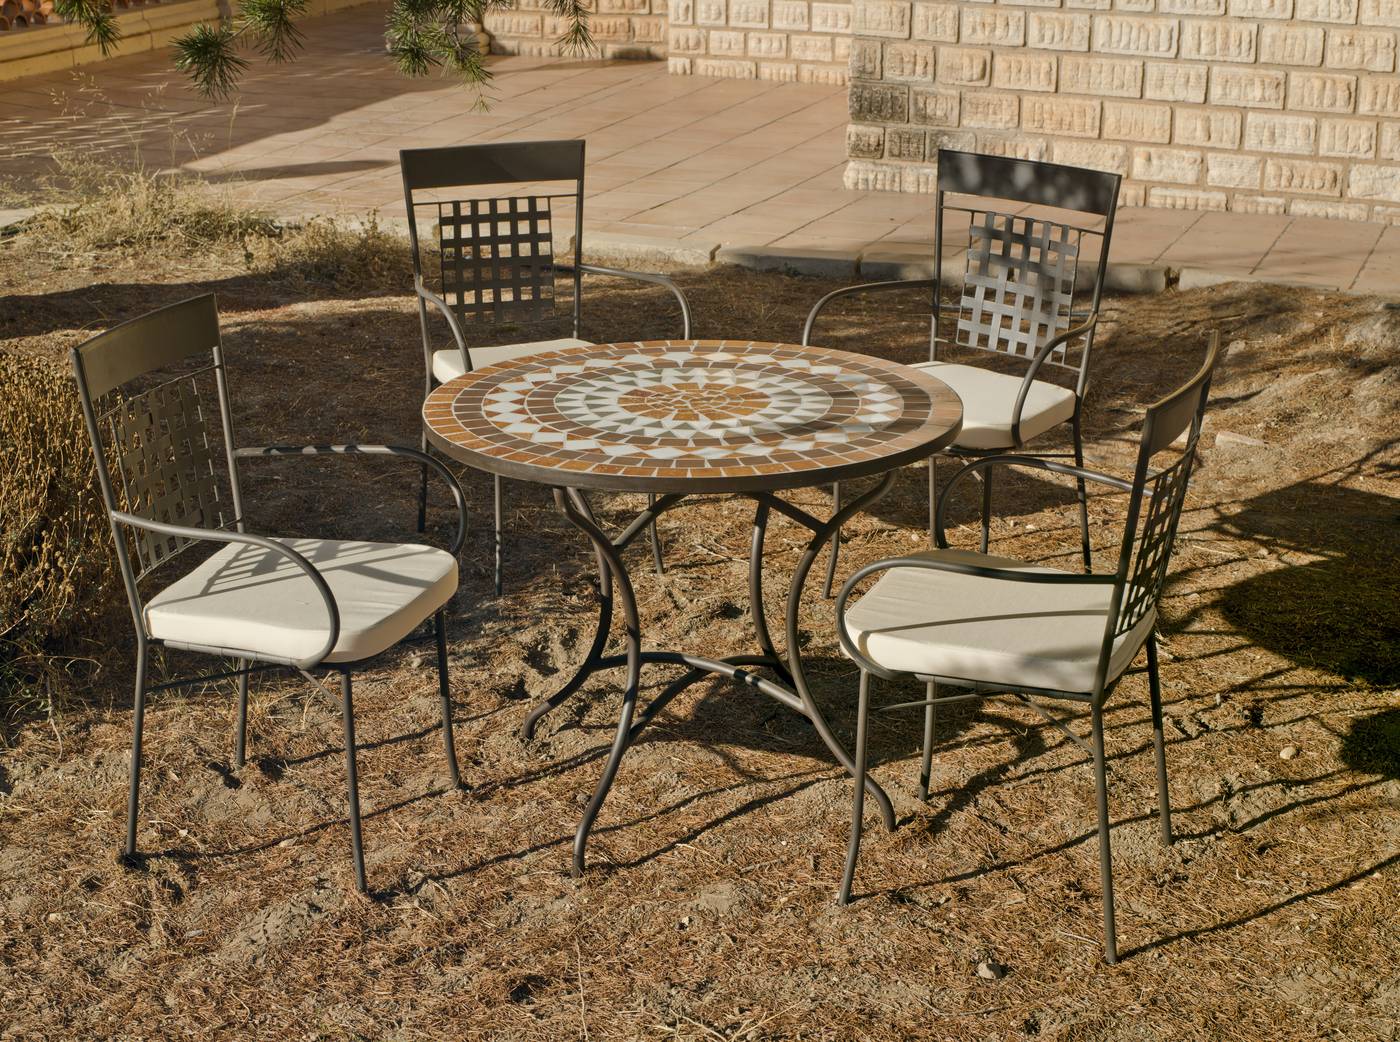 Conjunto para jardín o terraza de forja: 1 mesa con panel mosaico + 4 sillones de forja + 4 cojines